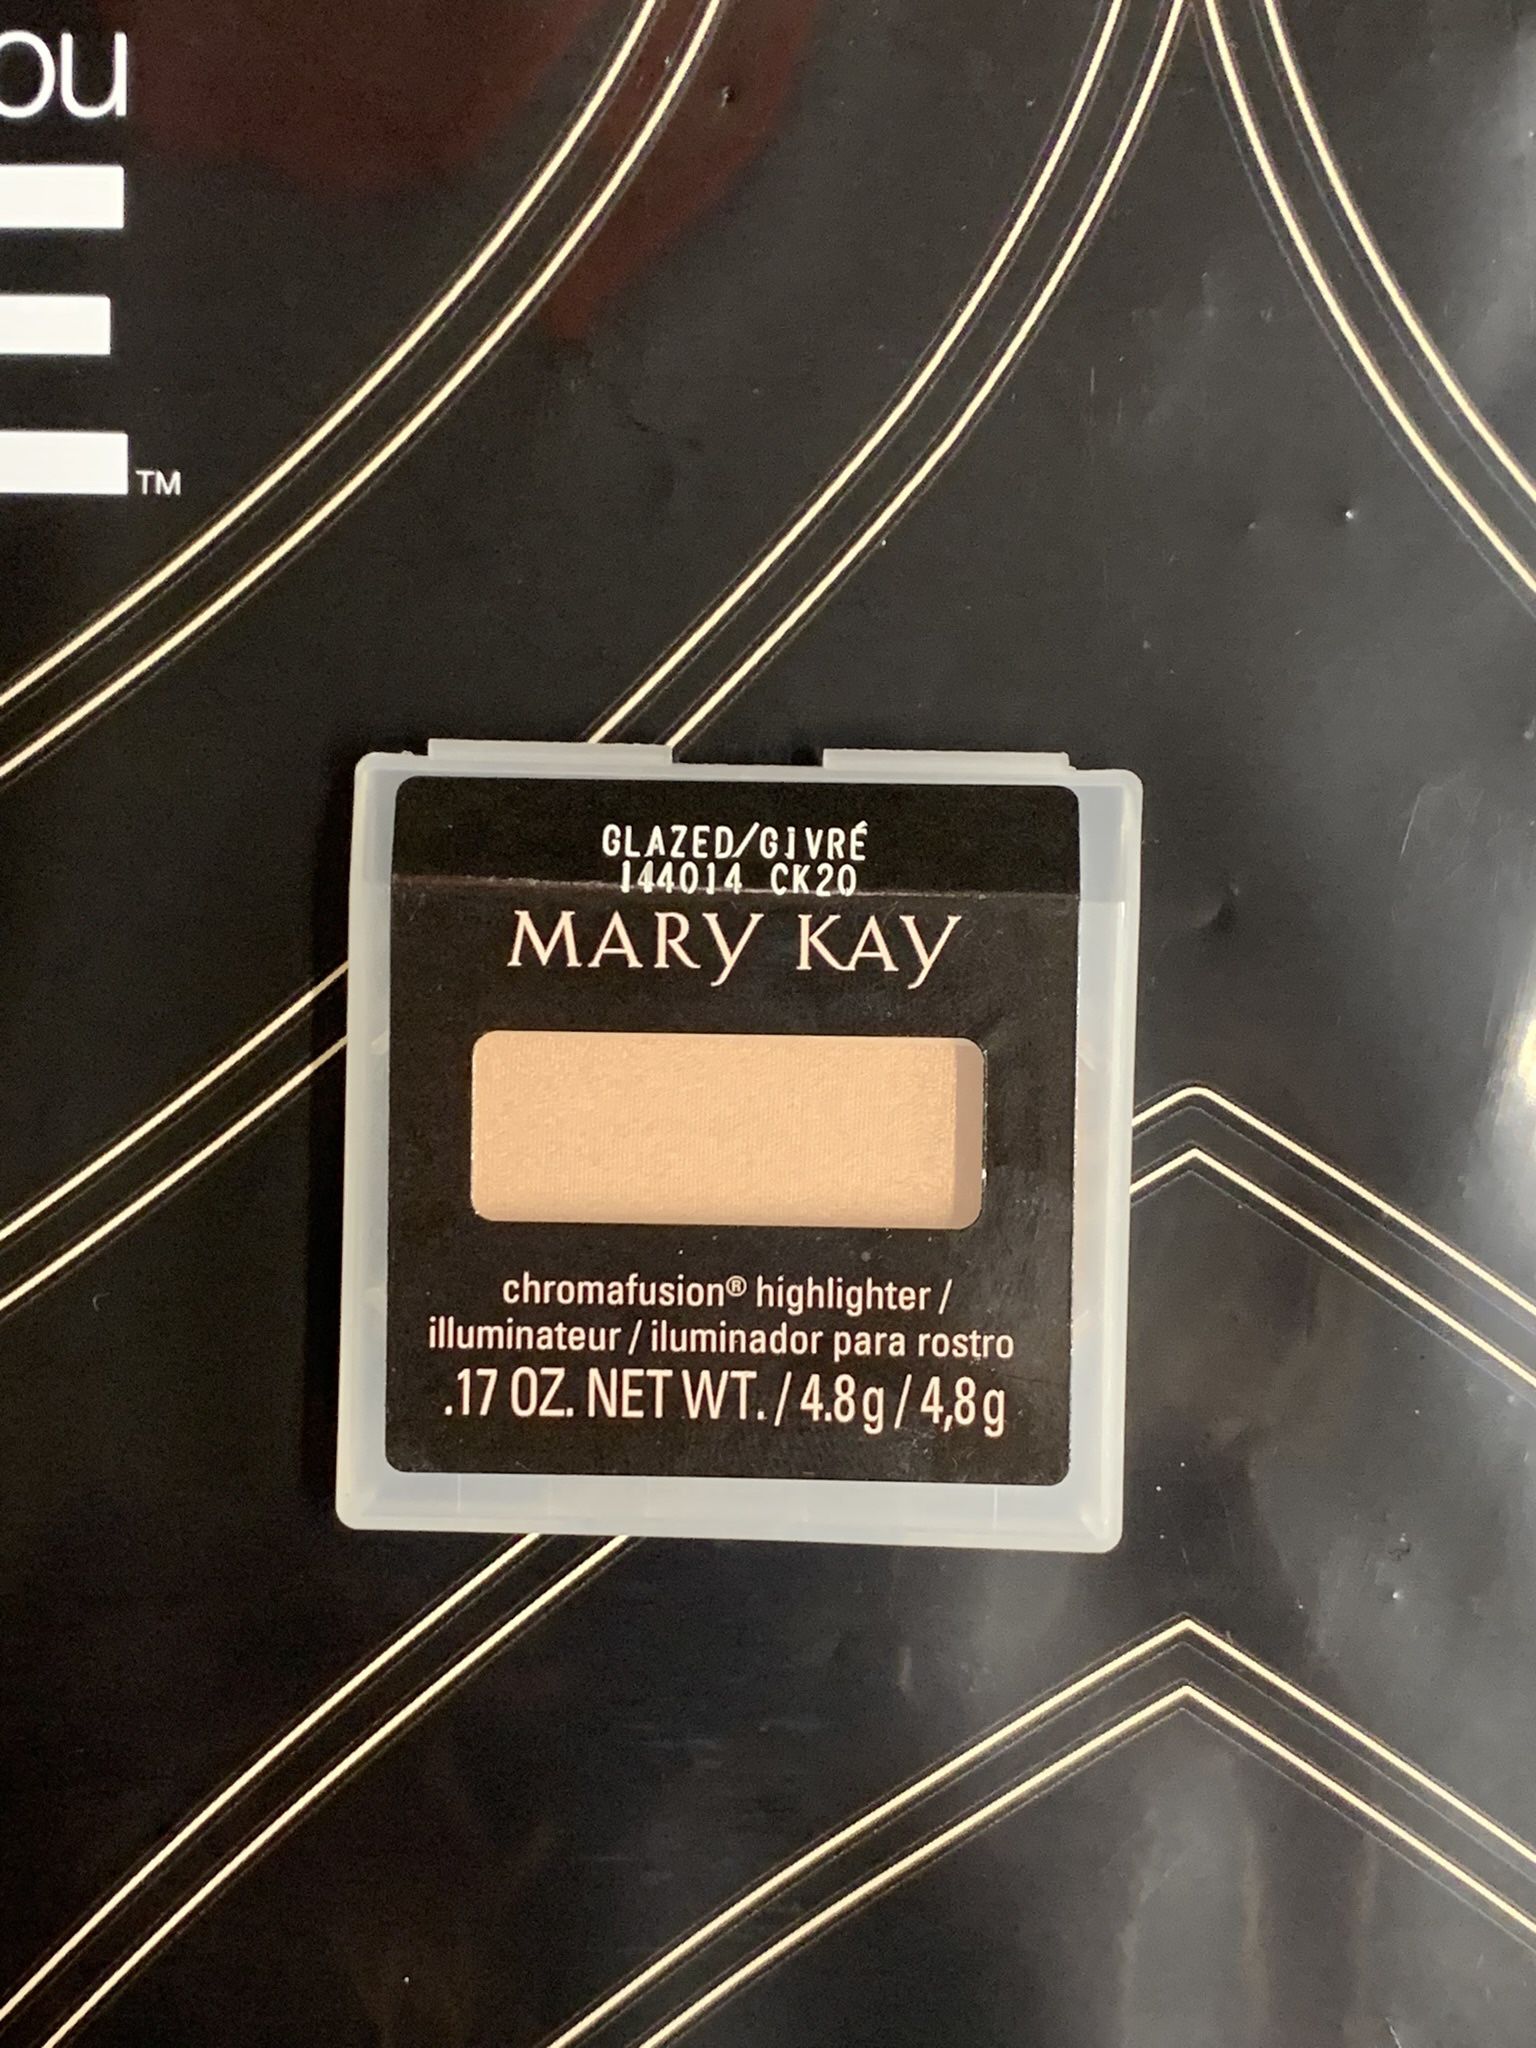 Mary Kay Chromafusion Highlighter